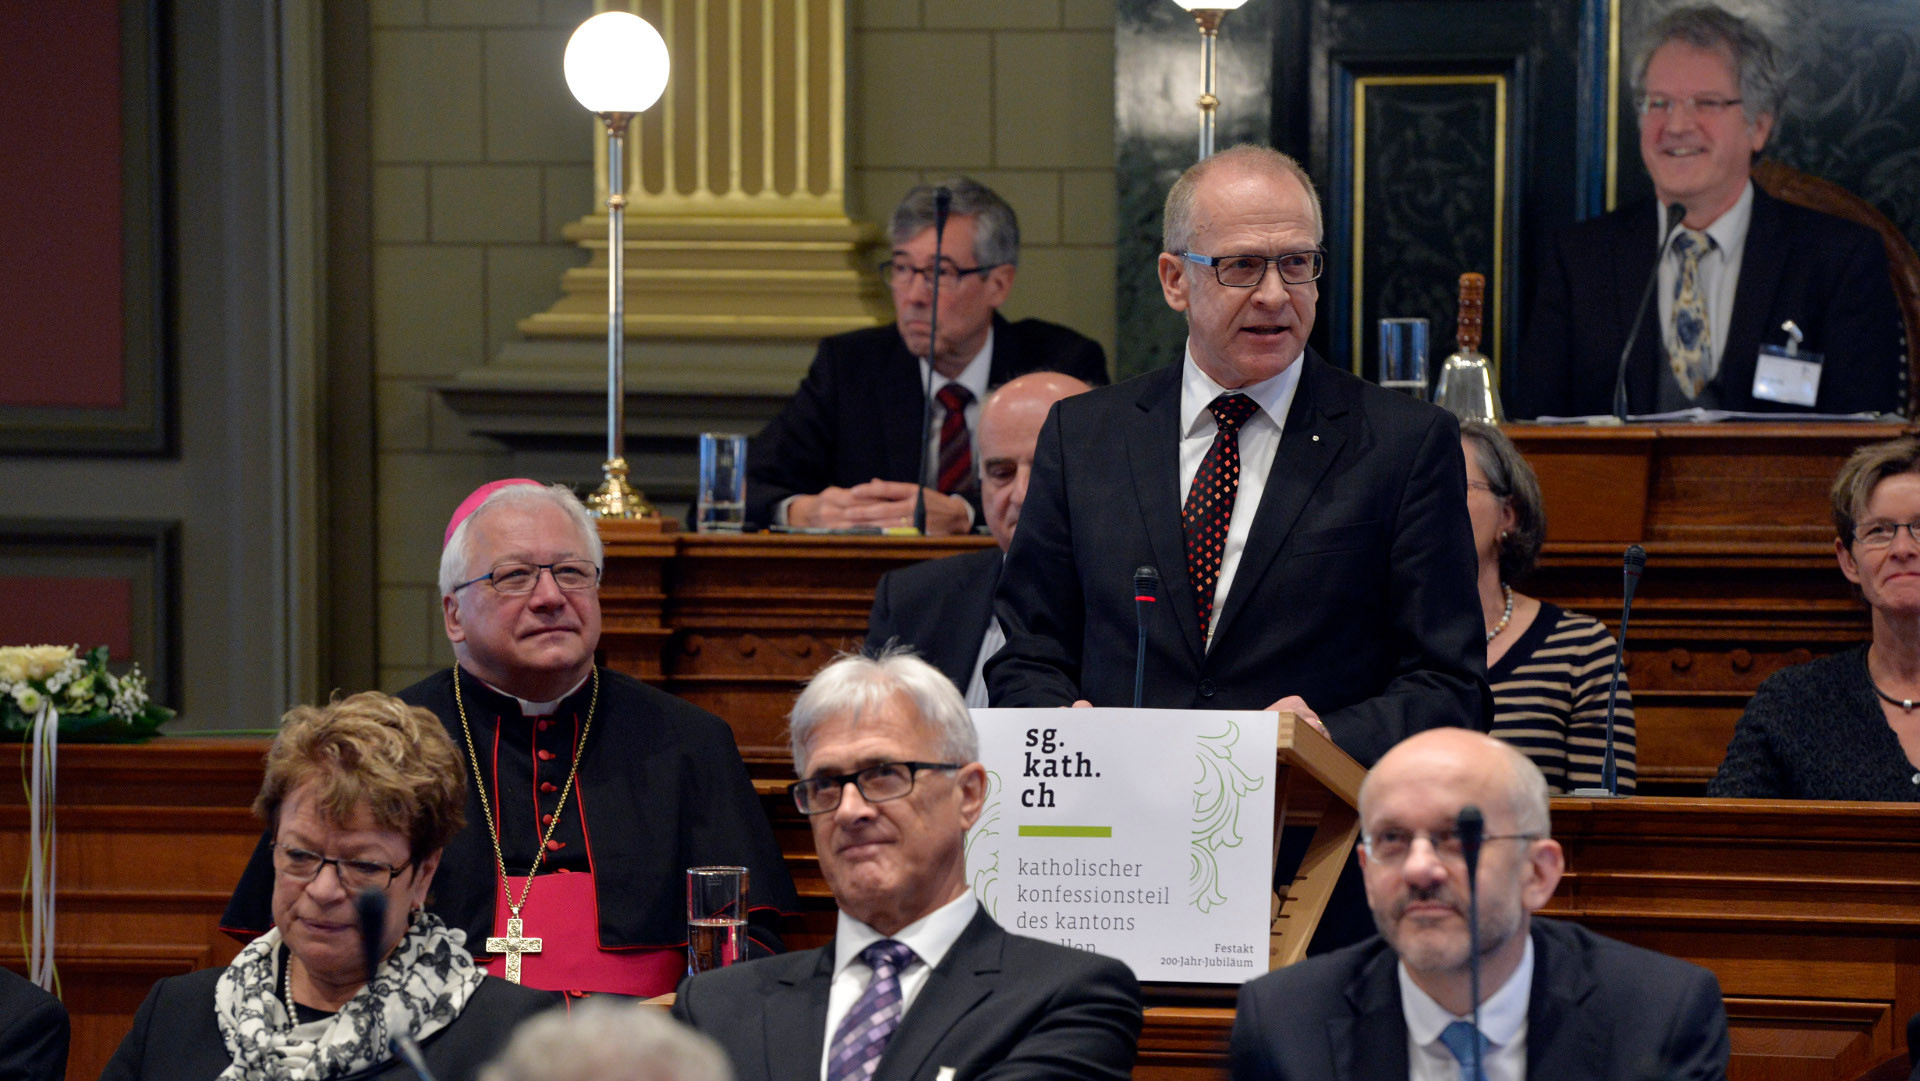 Regierungsrat Martin Gehrer am Rednerpult während seiner Rede vor dem Katholischen Kollegium anlässlich des 200-Jahr-Jubiläums des Katholischen Konfessionsteils des Kantons St. Gallen.